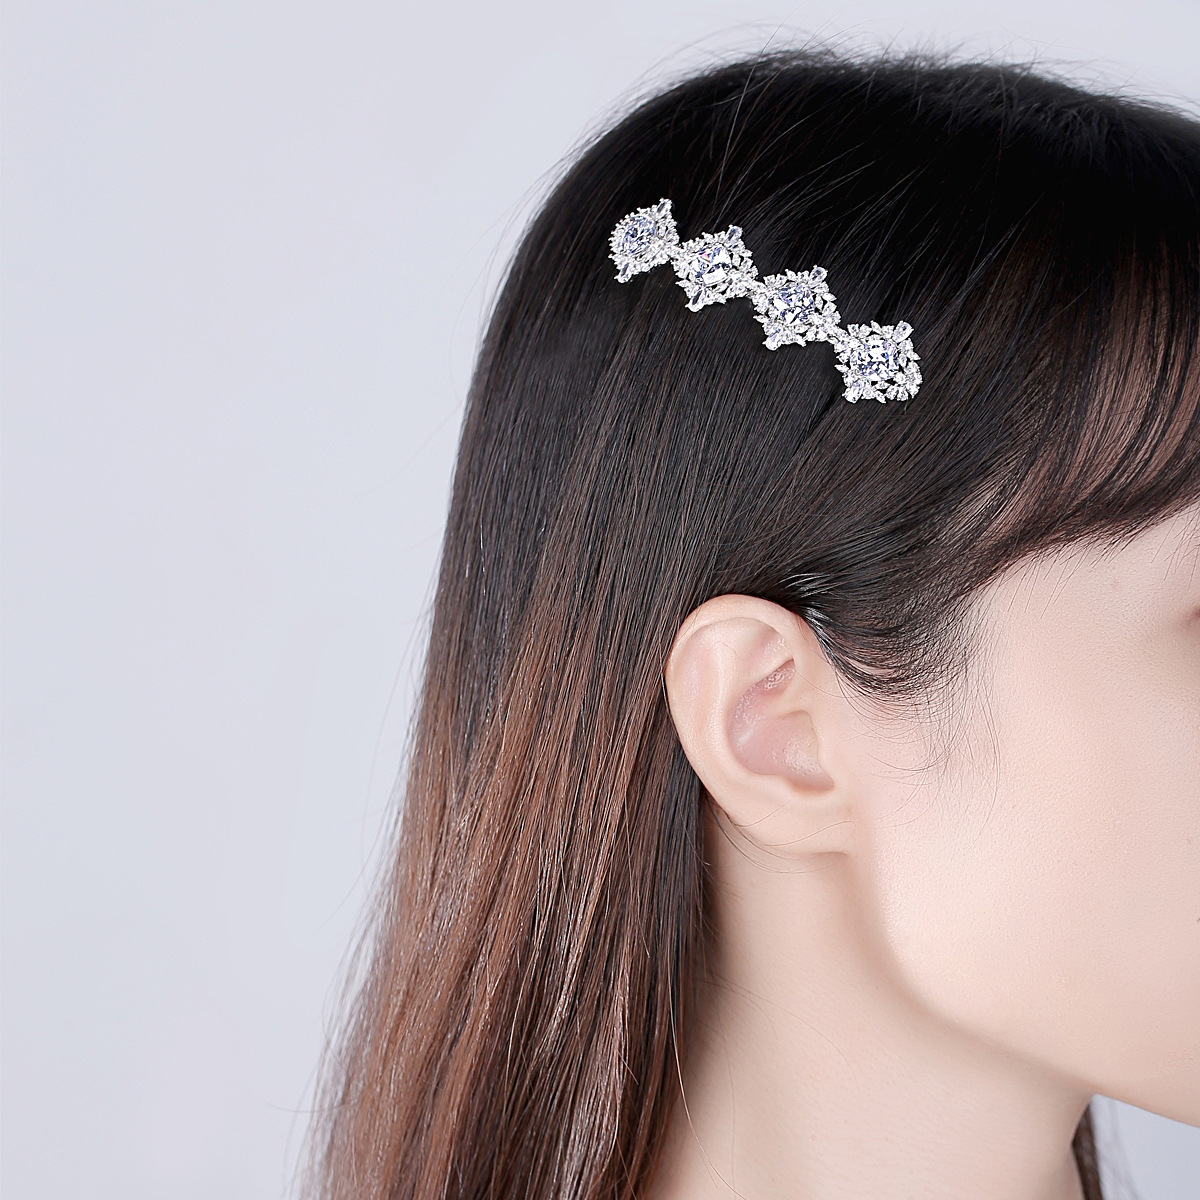 Hairpin Korean style fashion hair accessories